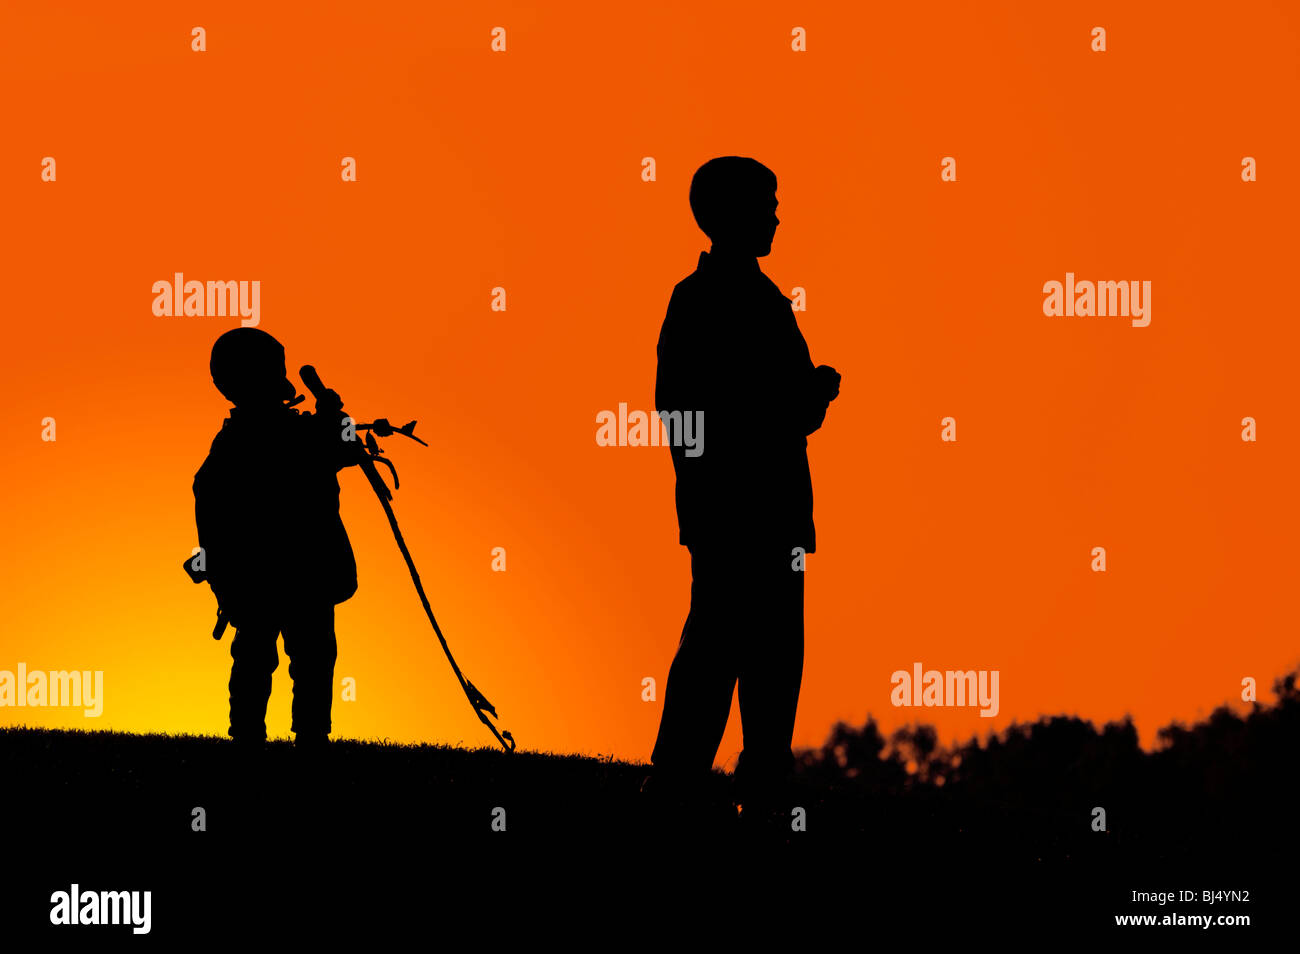 Zwei jungen stehen auf einem Hügel dunkle Silhouette über bunte Digital angepasst orange Abendhimmel Stockfoto